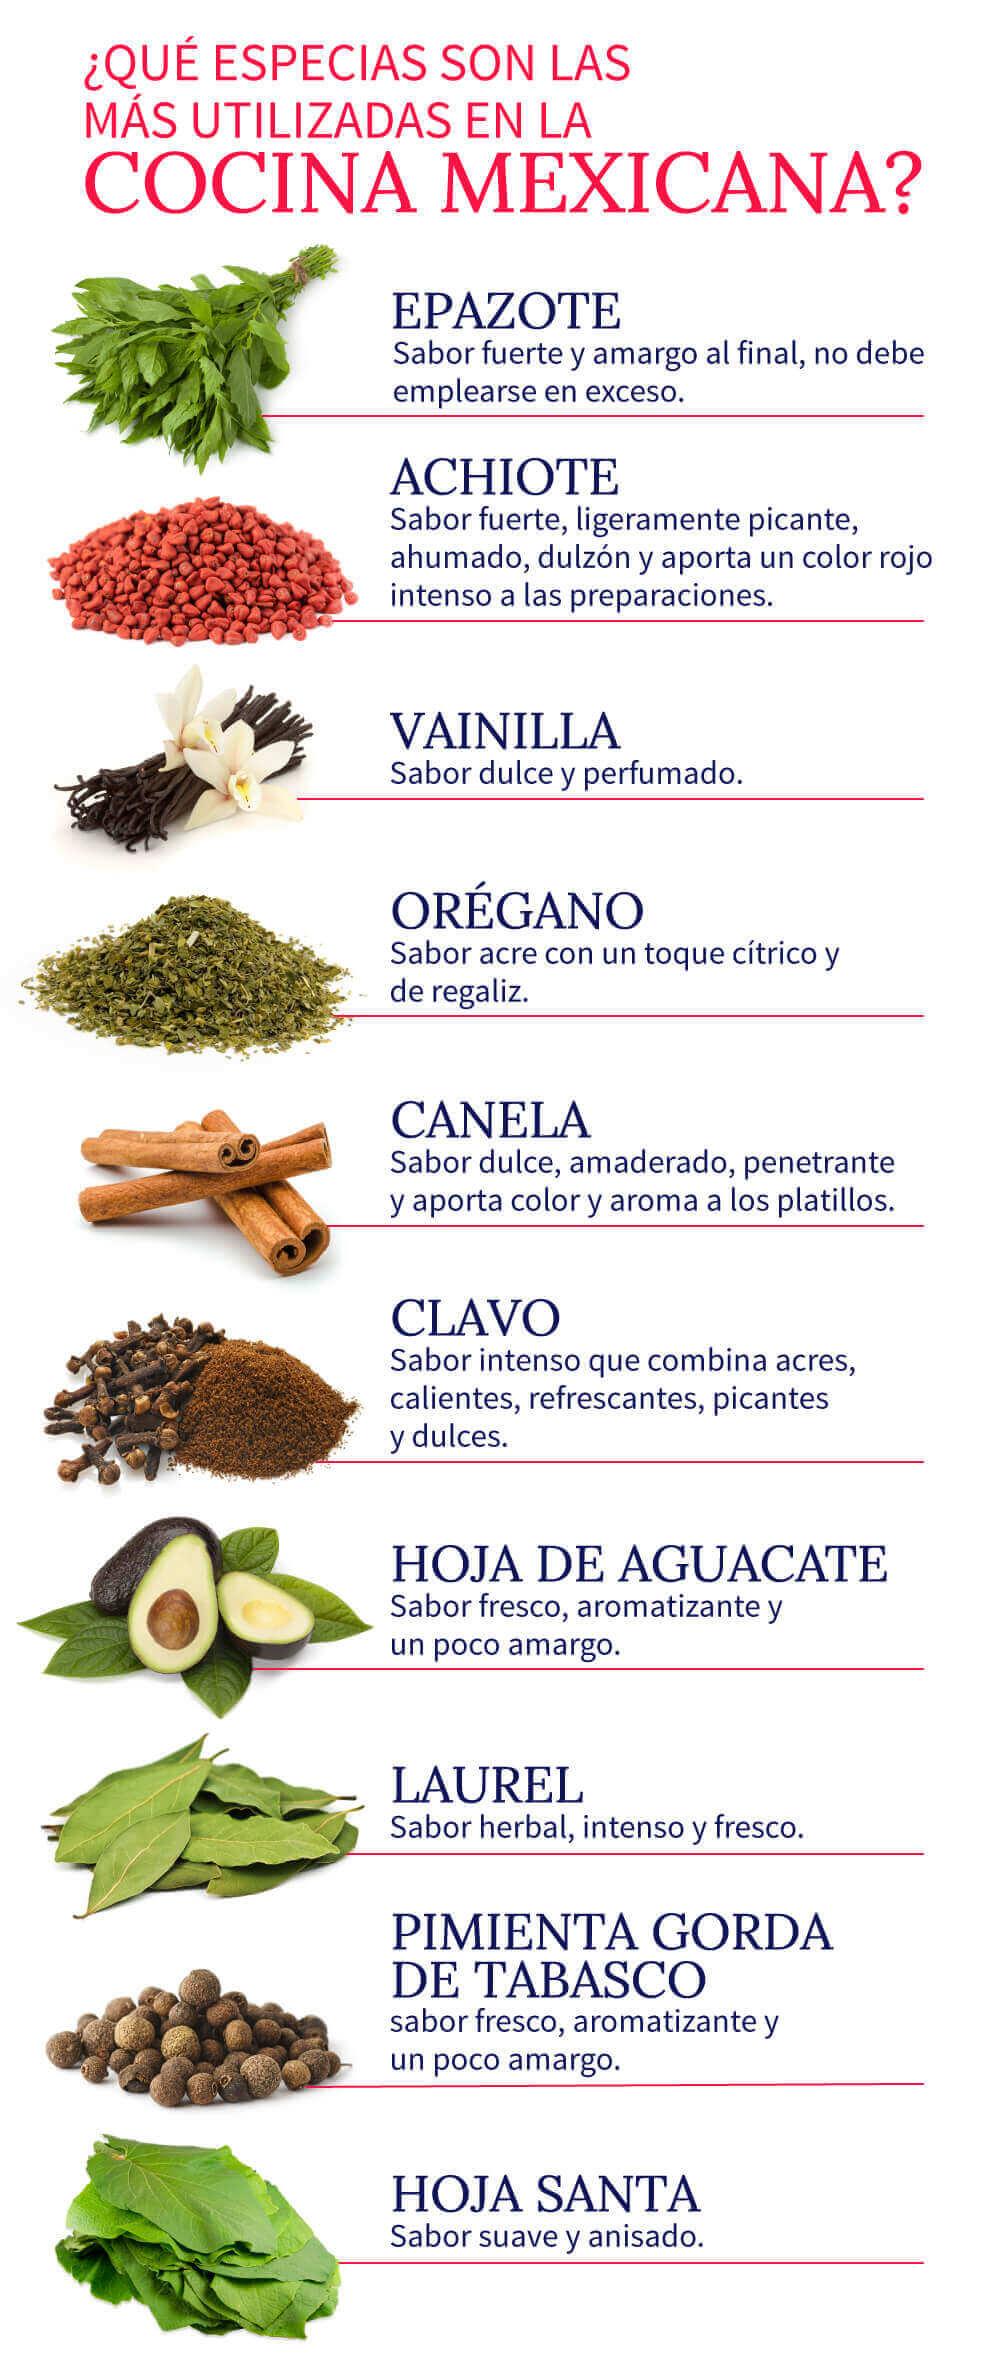 Las especias más usadas en la gastronomía mexicana